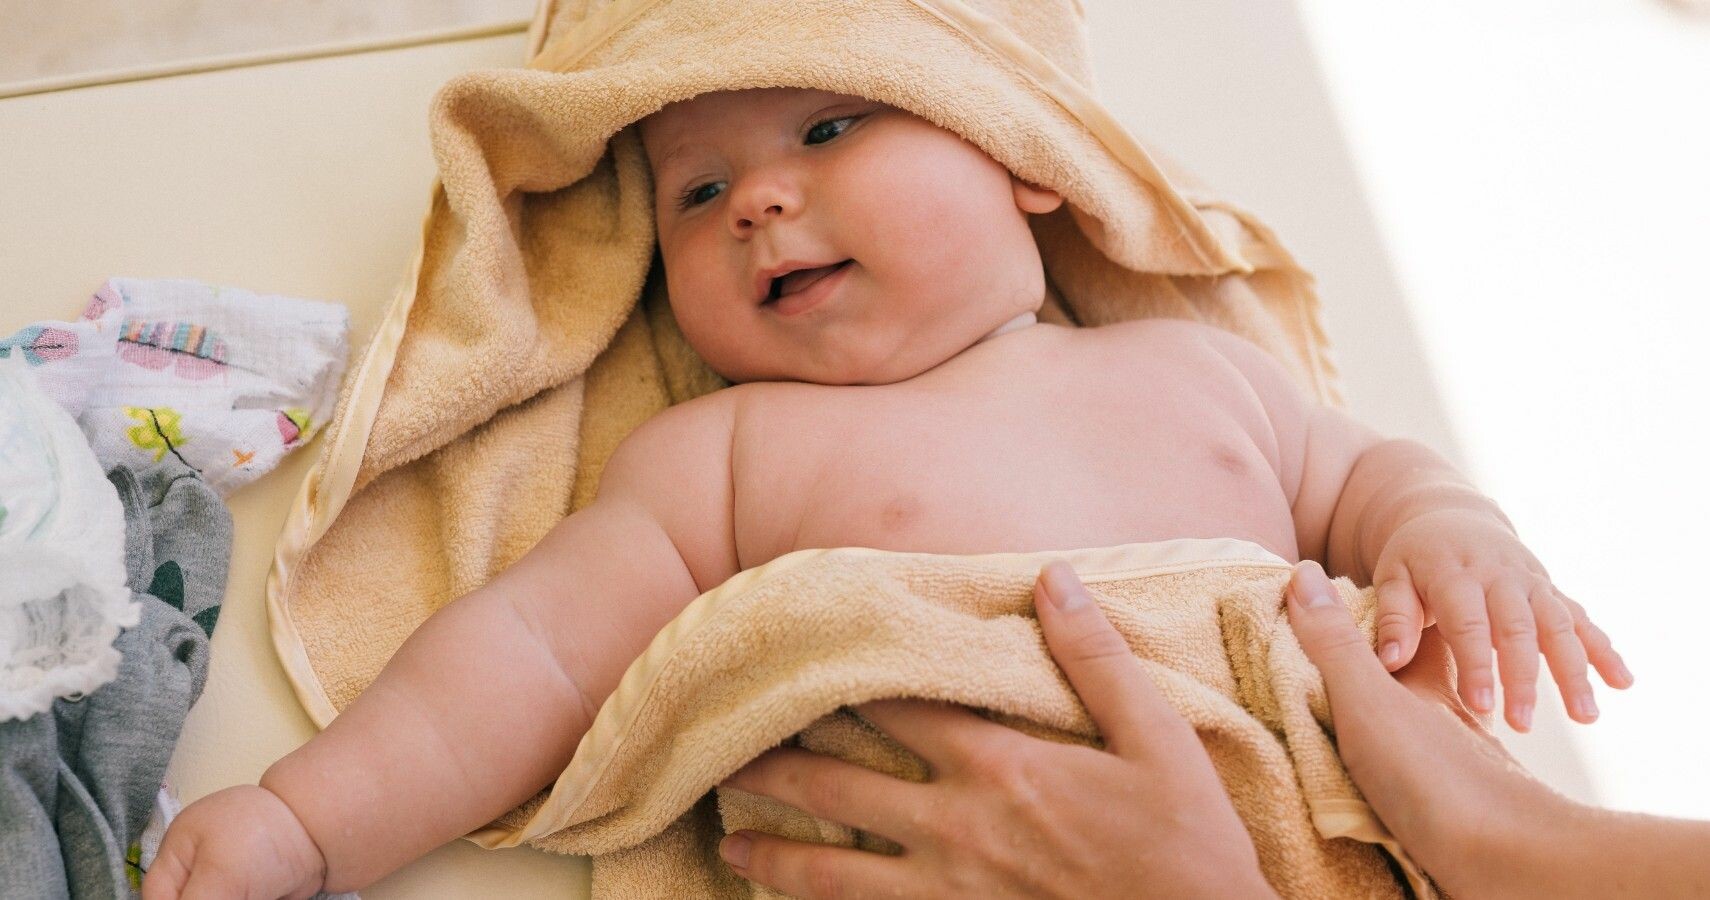 Cần lau khô người trẻ sau khi tắm để tránh các bệnh về da. Nguồn ảnh: Babygaga.com